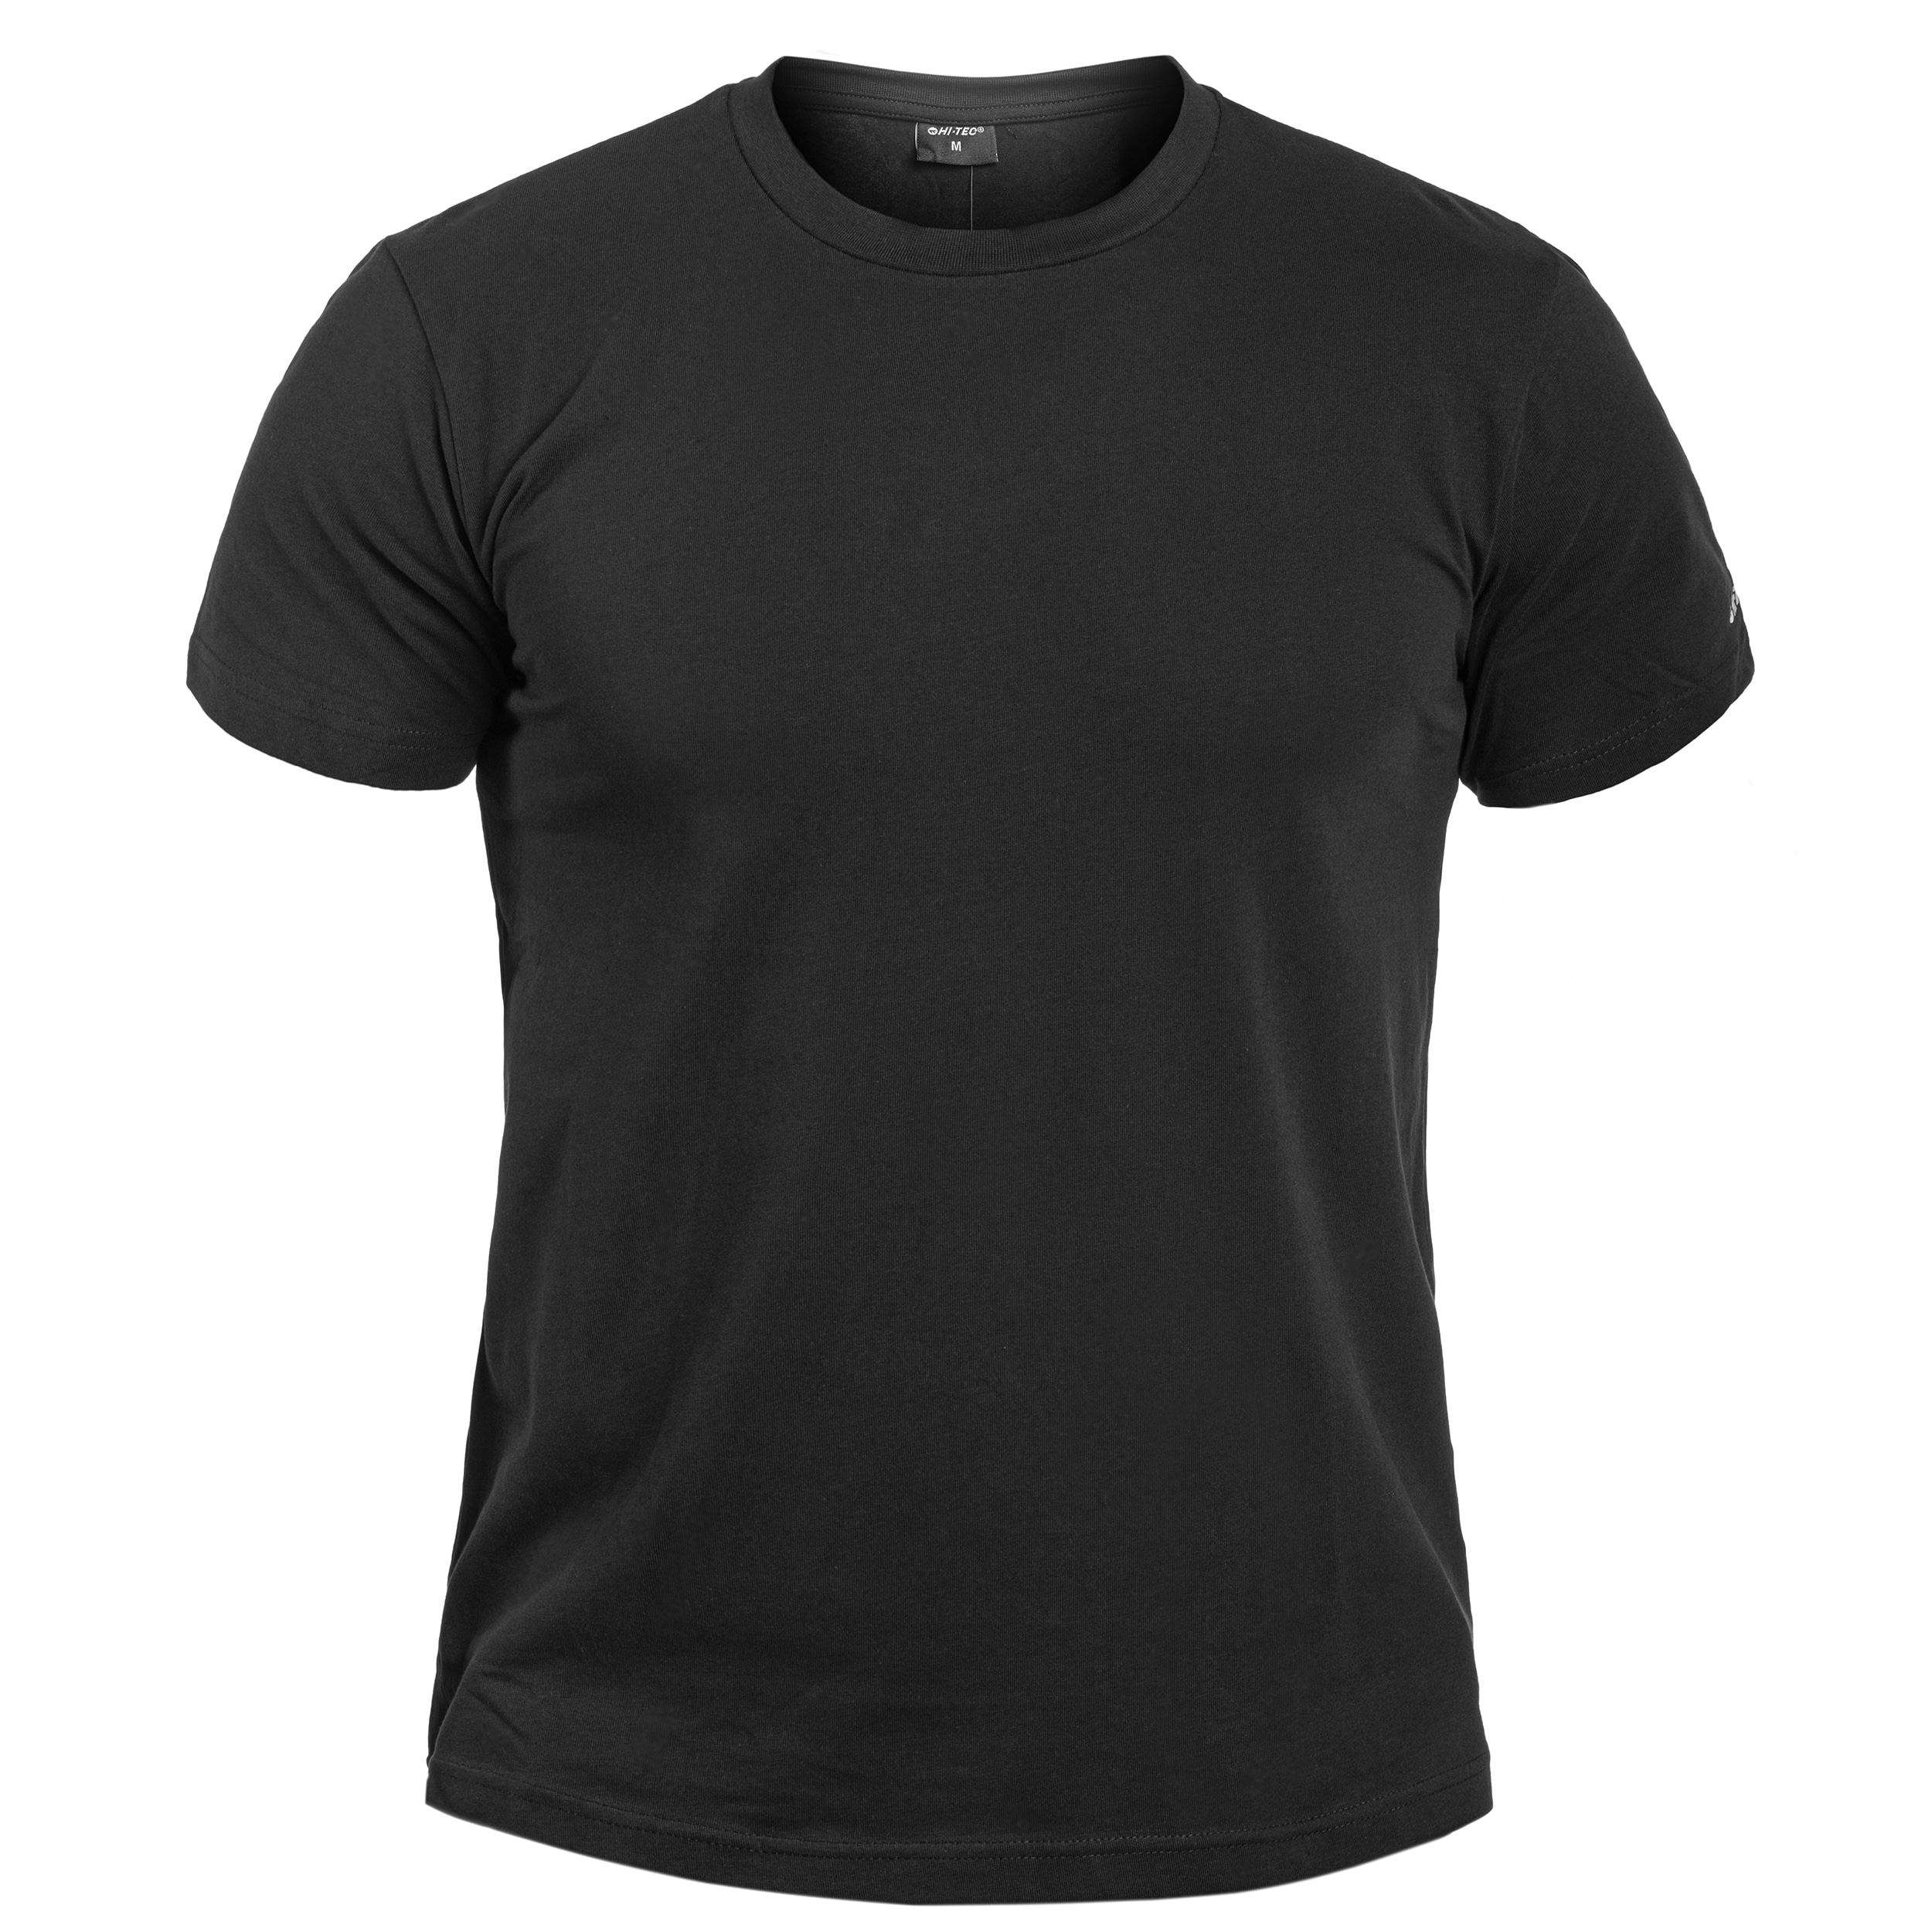 Koszulka T-shirt Hi-Tec Plain - Black